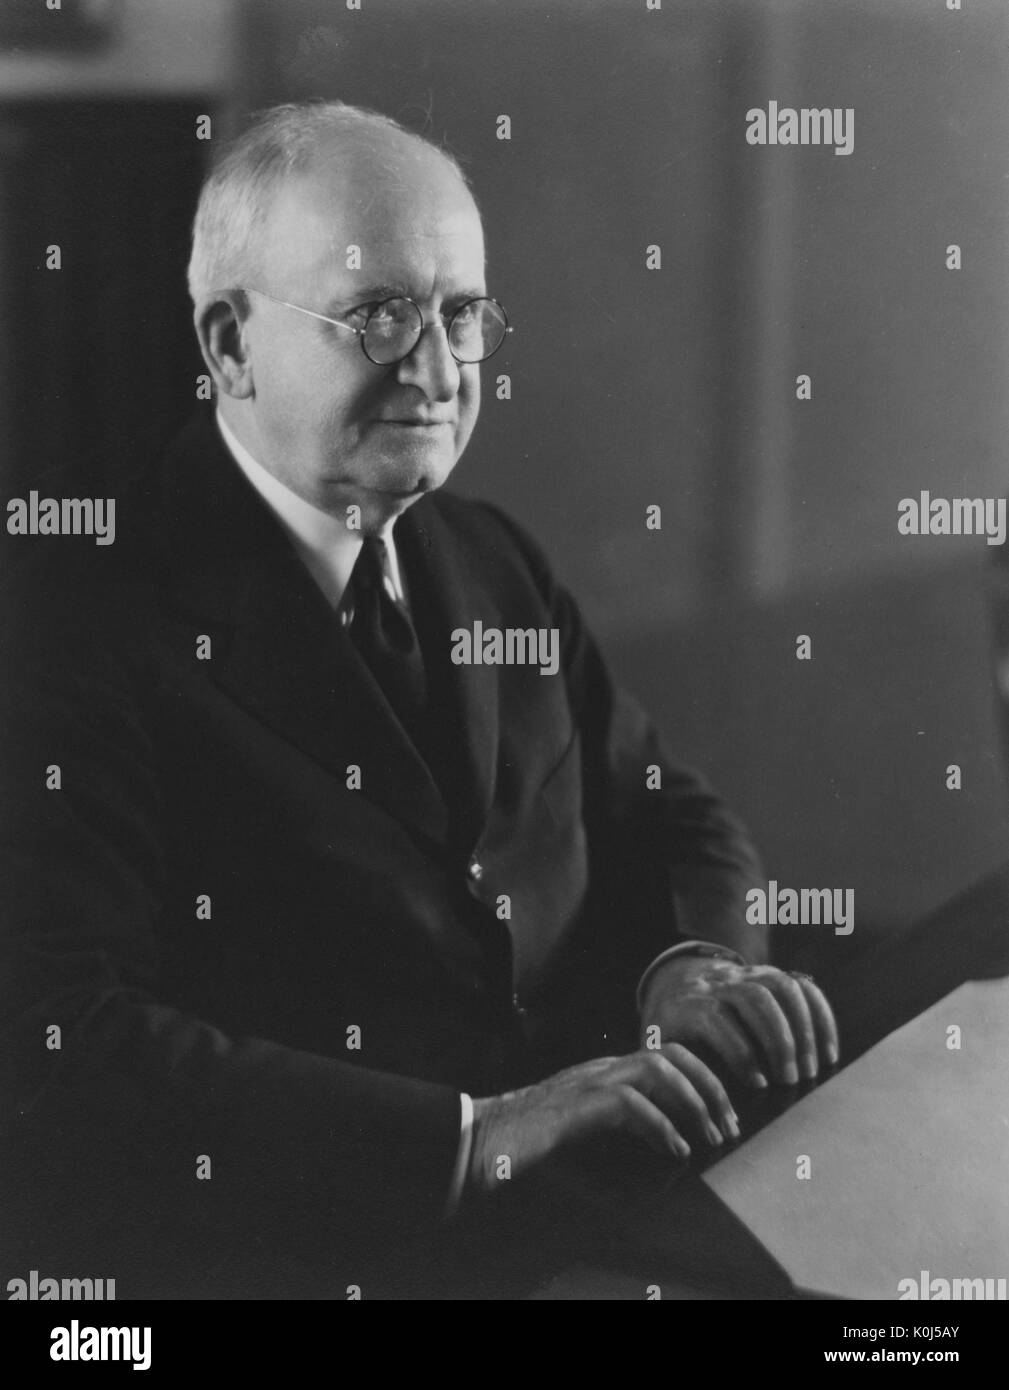 Halbe Länge sitzt Porträt der amerikanischen Physiker Joseph Sweetman Ames, der Professor war, Propst, dann Präsident an der Johns Hopkins Universität. 1935. Stockfoto